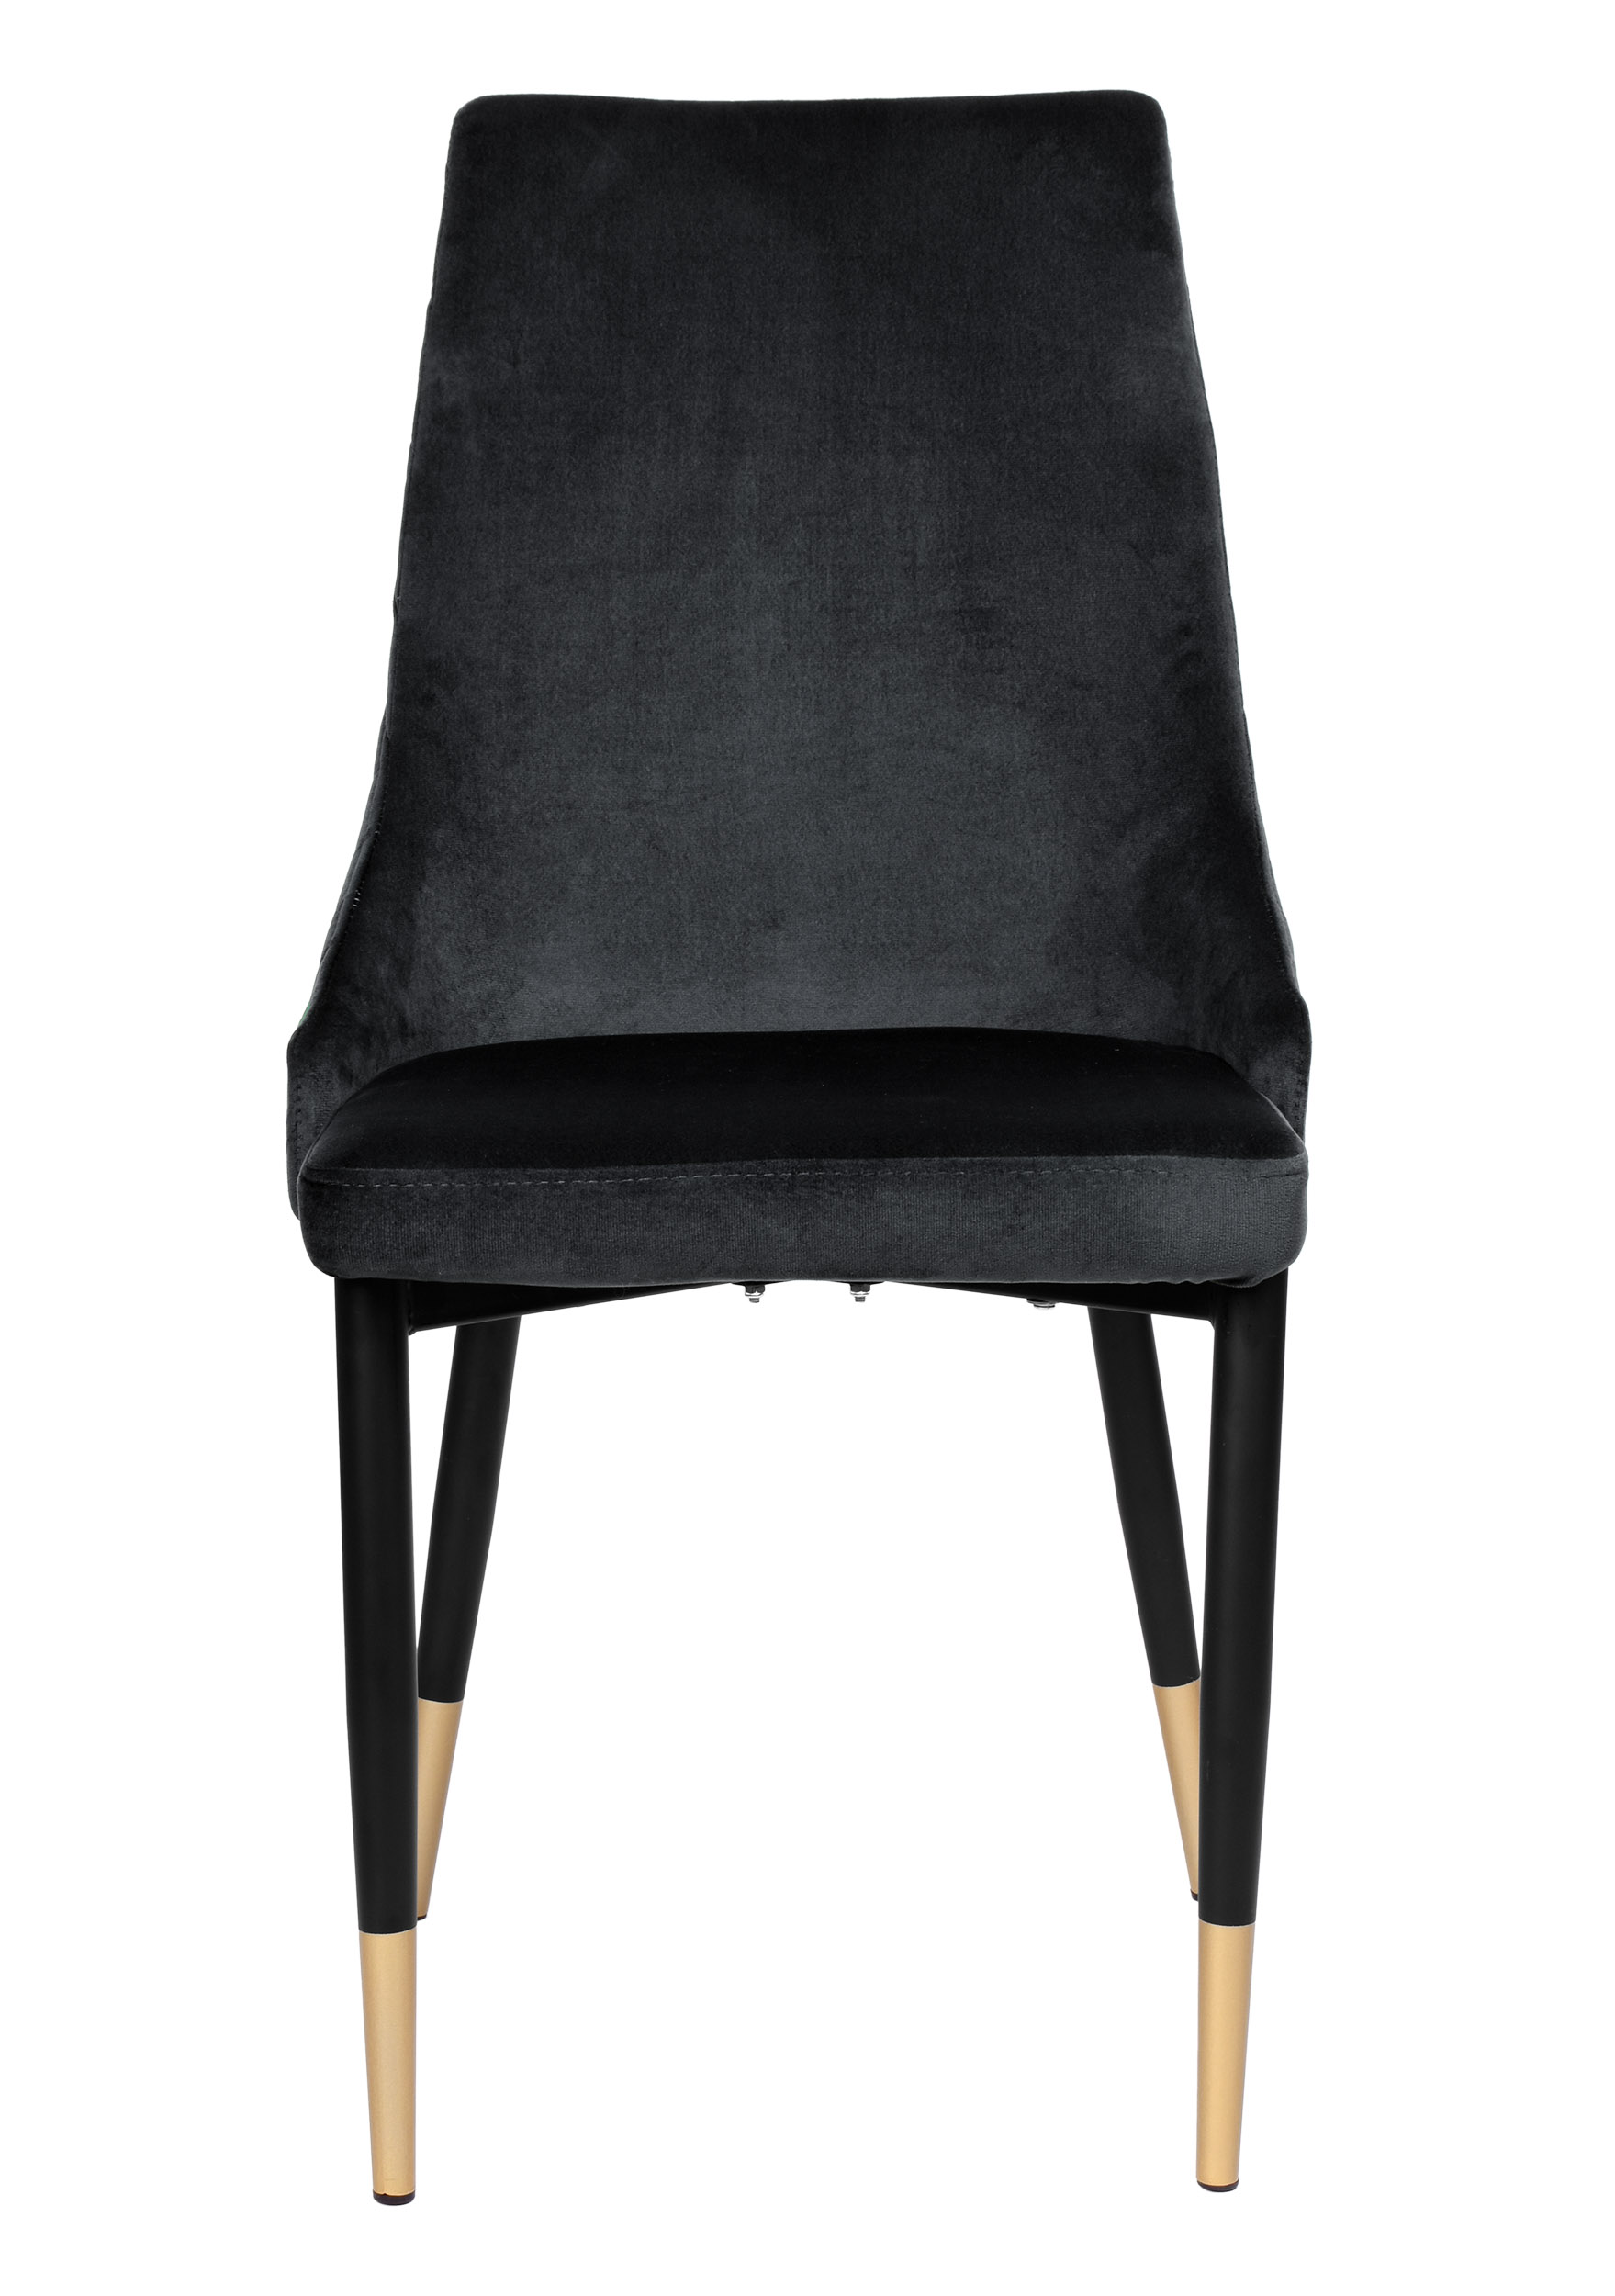 Krzesło welurowe VERMONT czarne Velvet